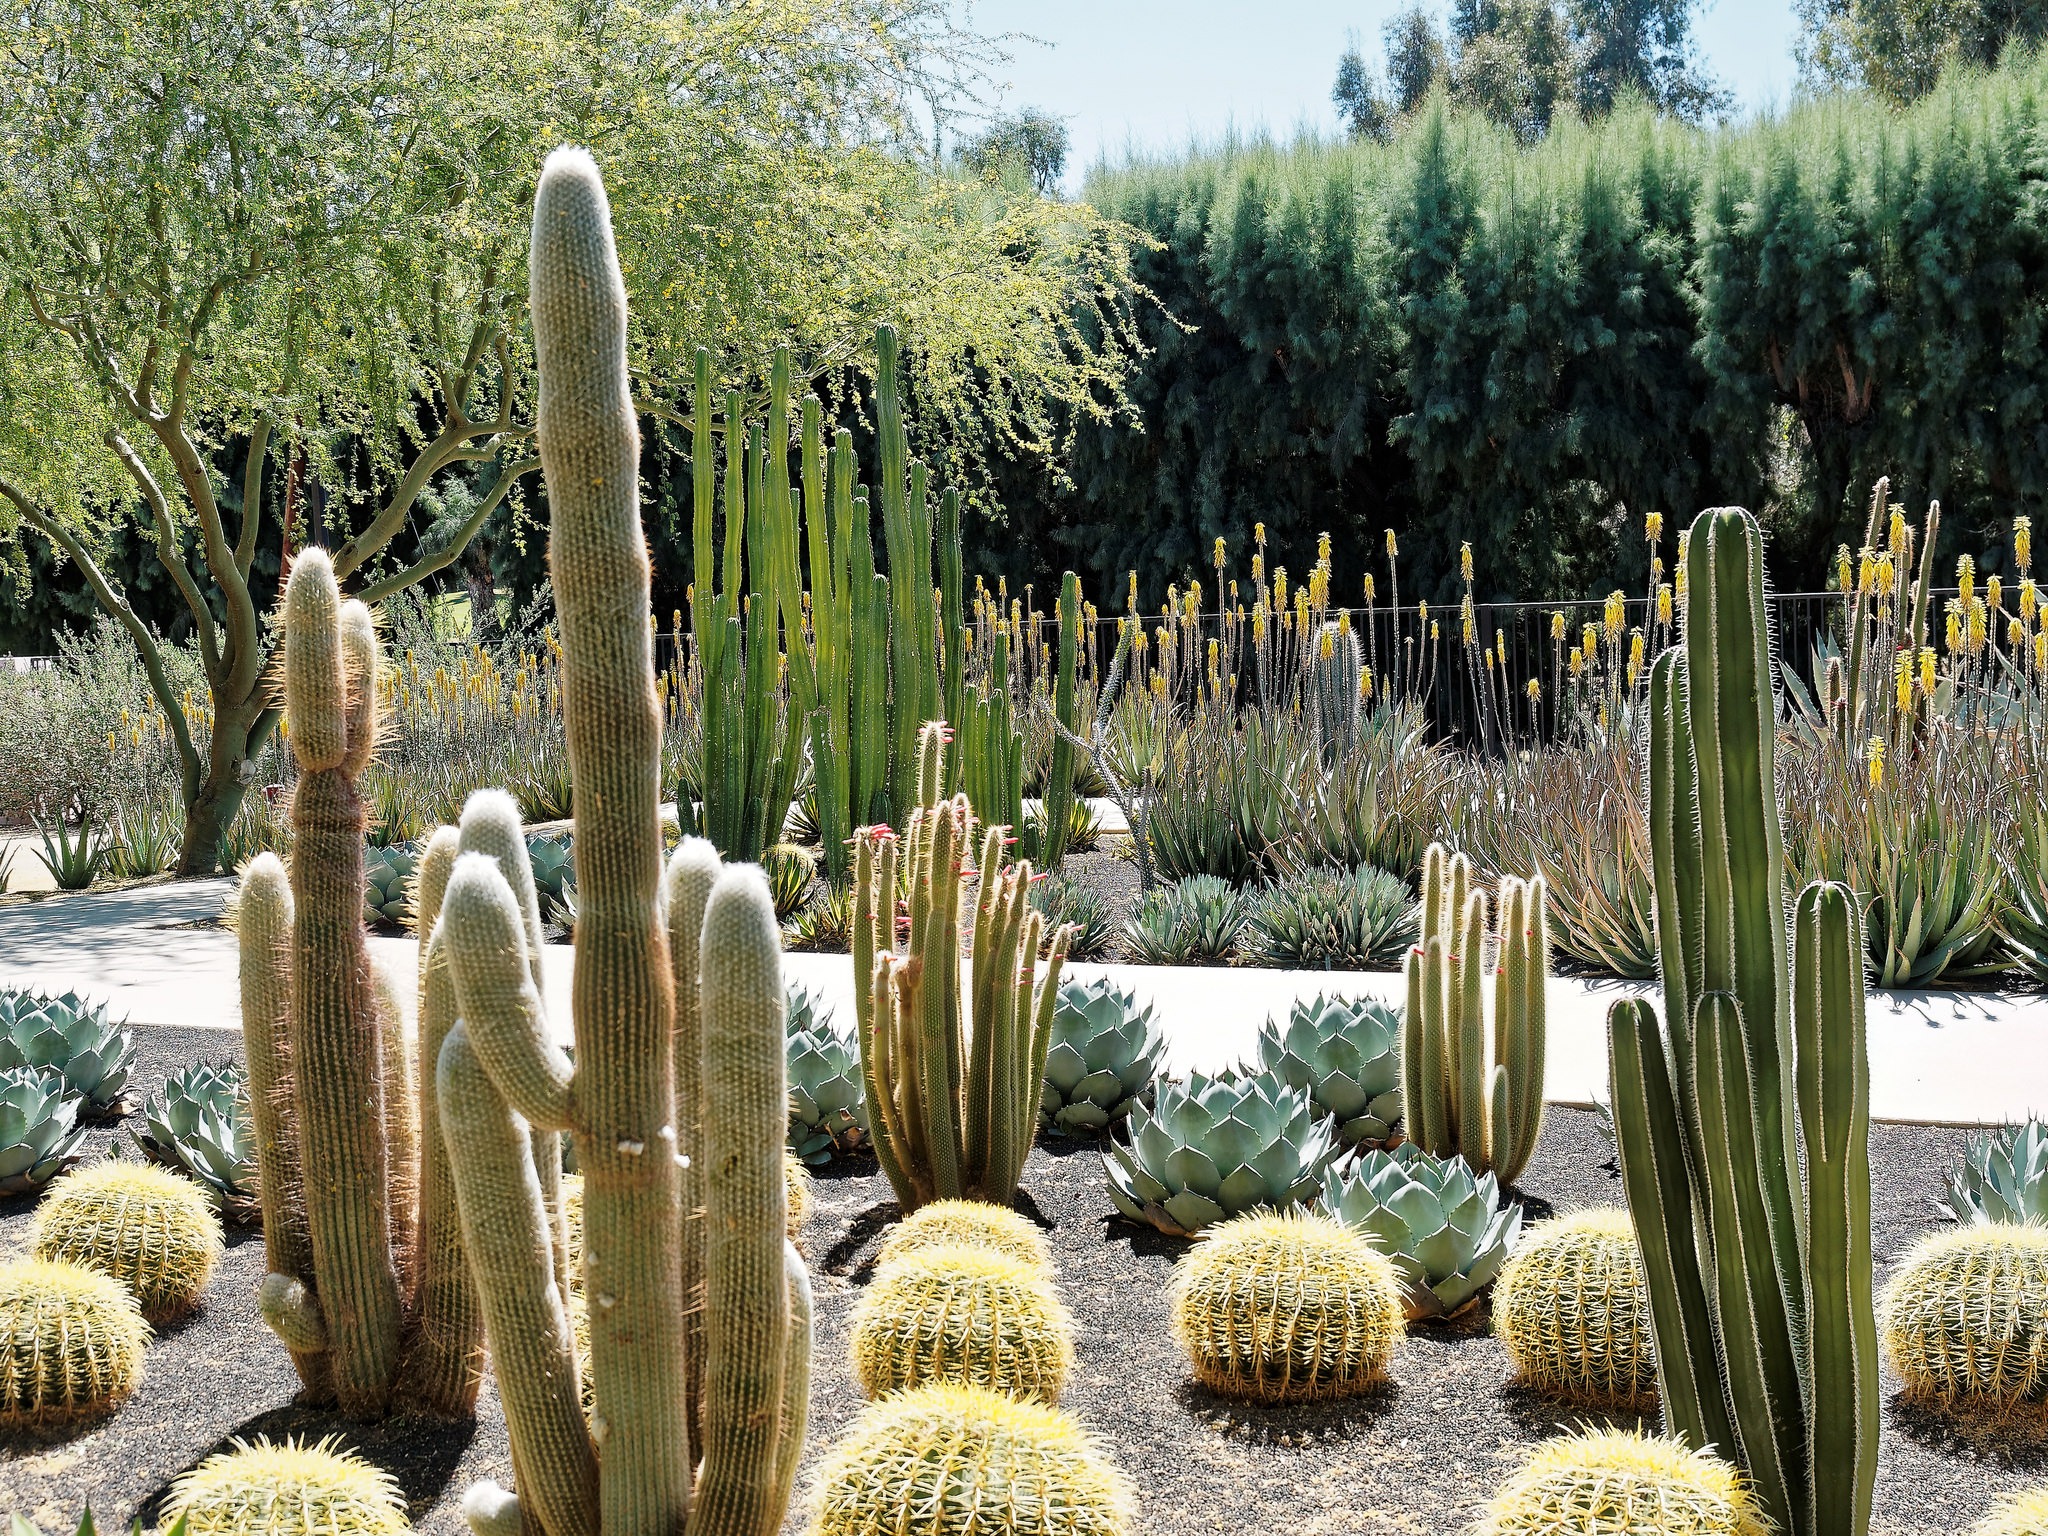 Cacti 101: How to grow a cactus garden in Southern California